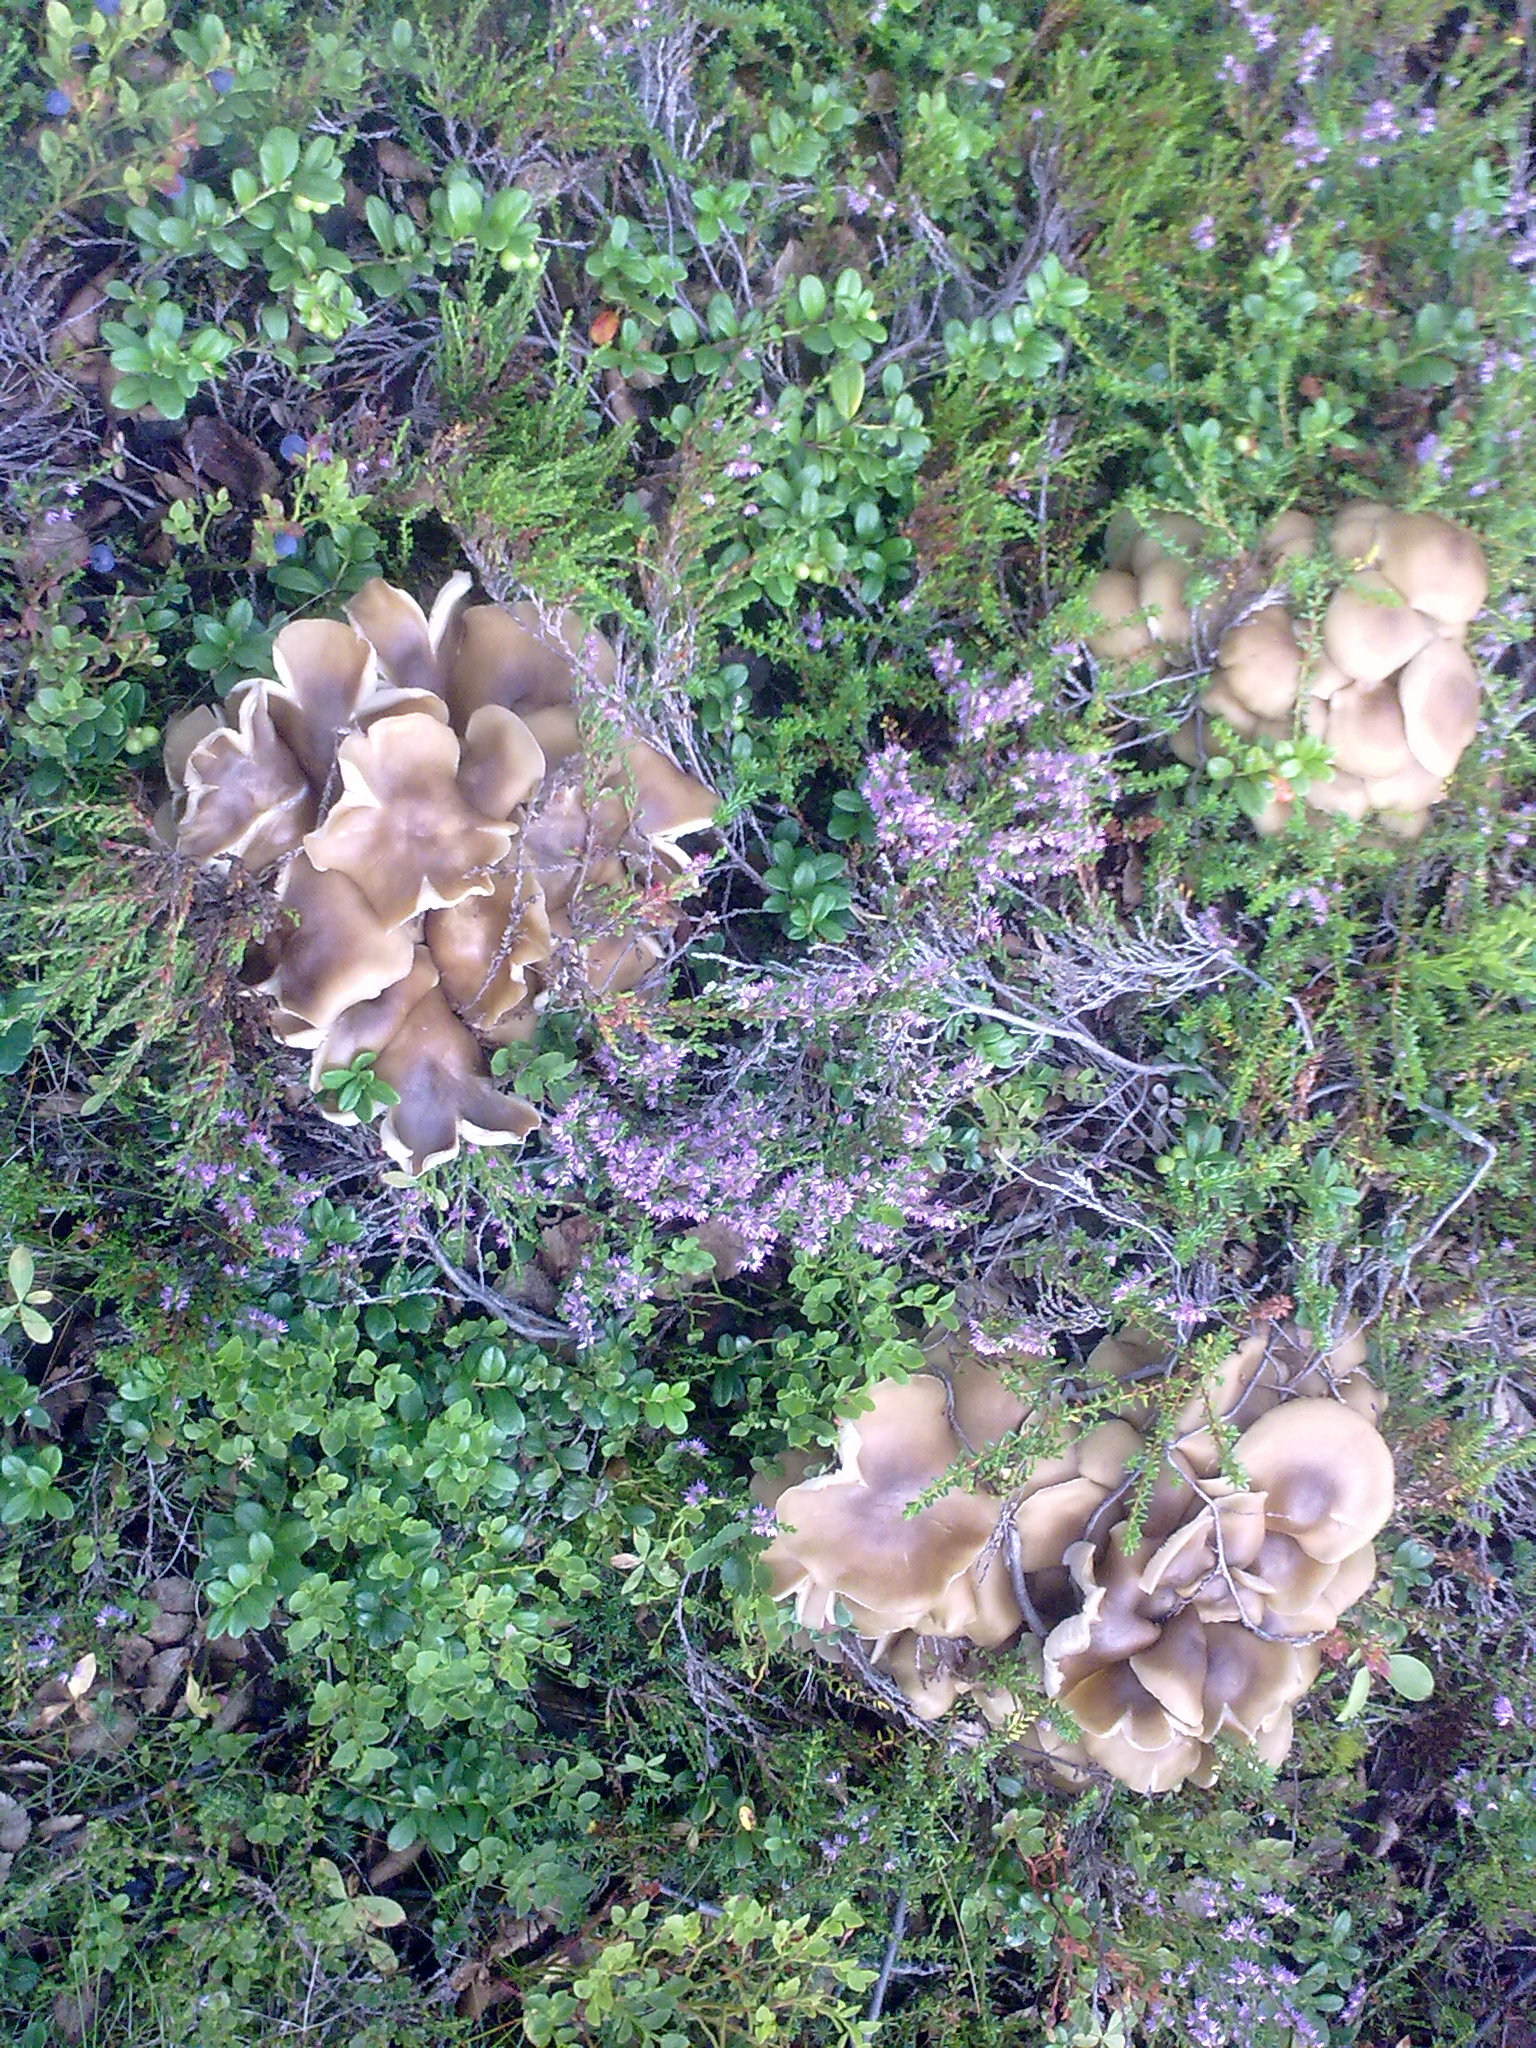 Незнакомые грибы растут на земле в смешанном лесу в Заполярье плотными группами от нескольких штук до нескольких десятков, от одного (корня?)